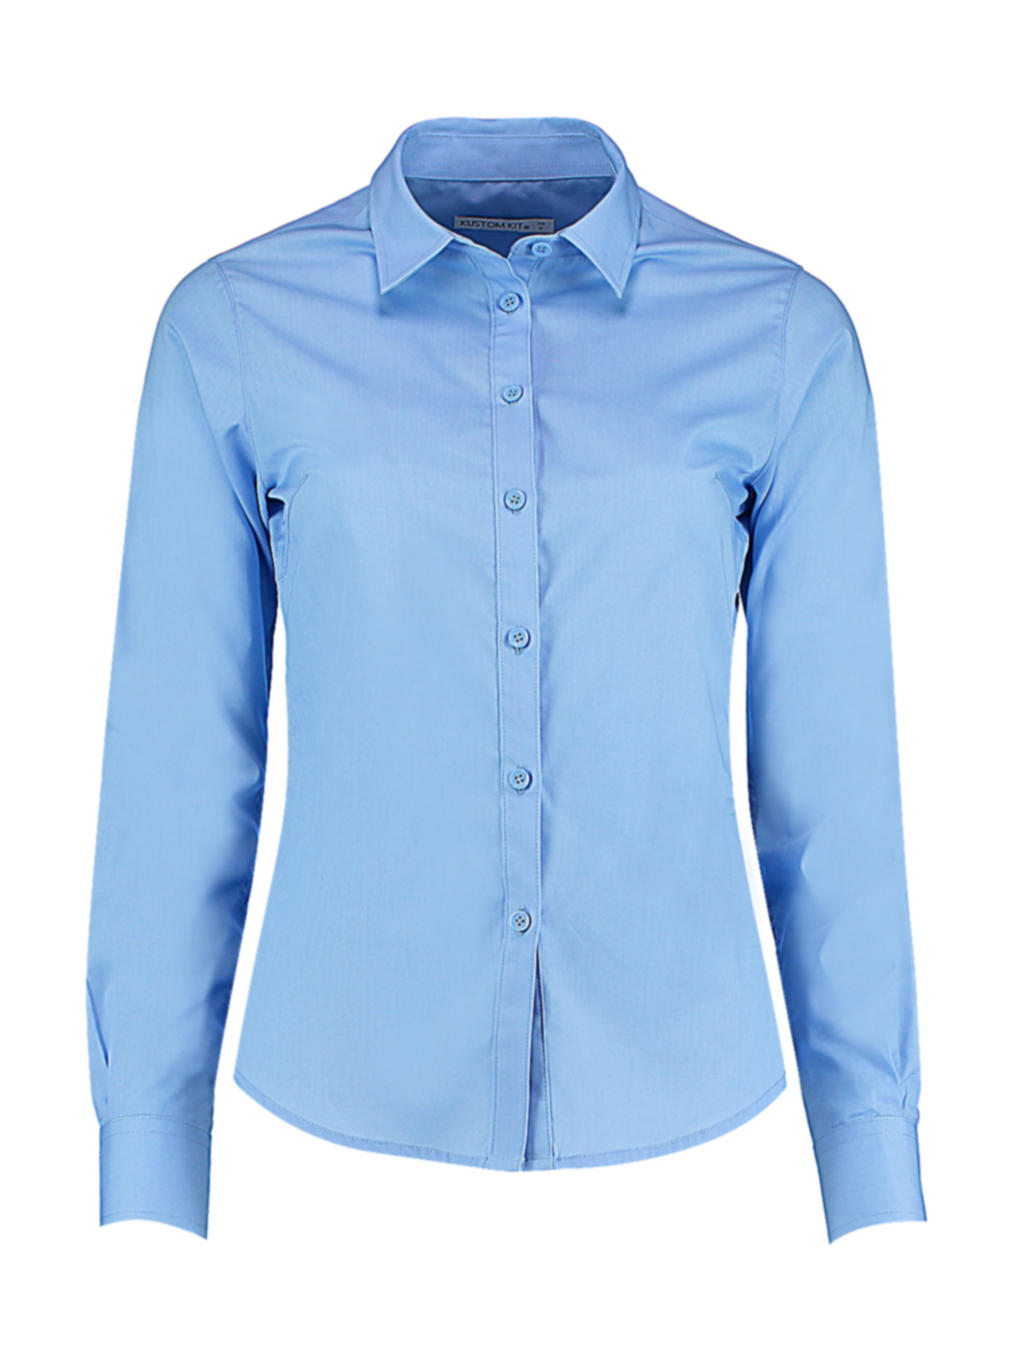 Dámska košeľa Poplin s dlhými rukávmi - light blue